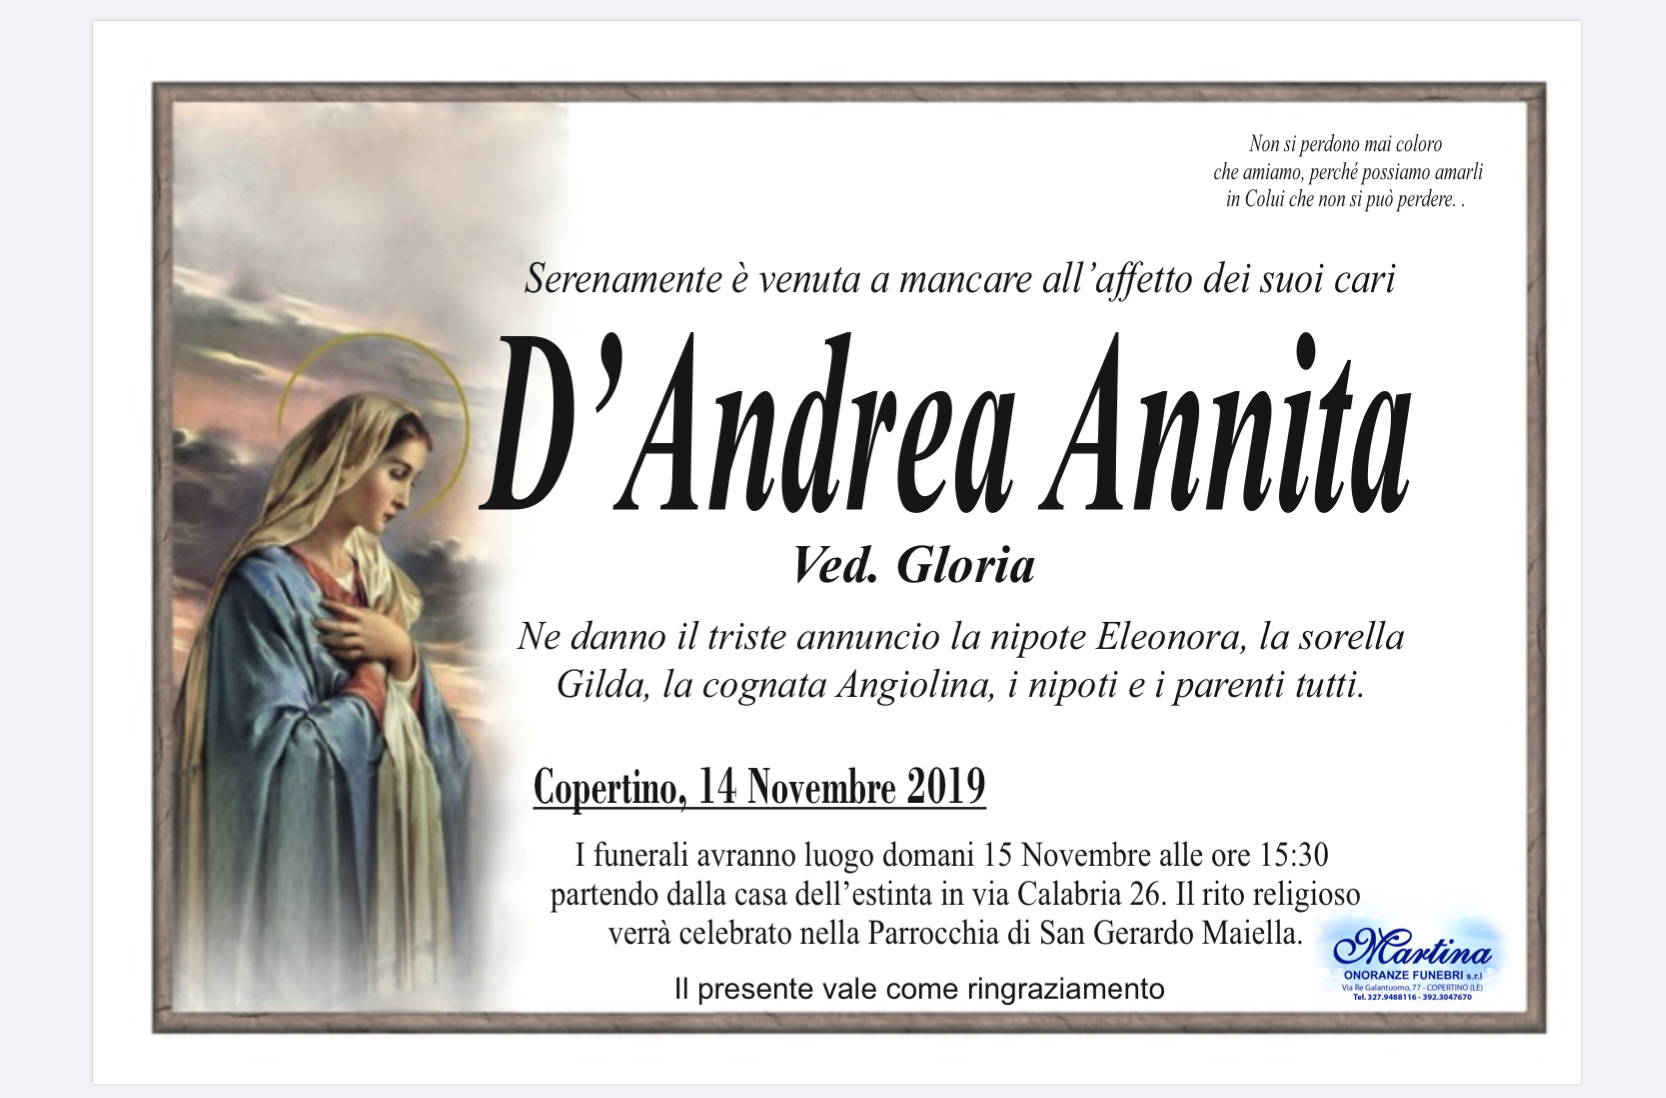 Annita D’Andrea